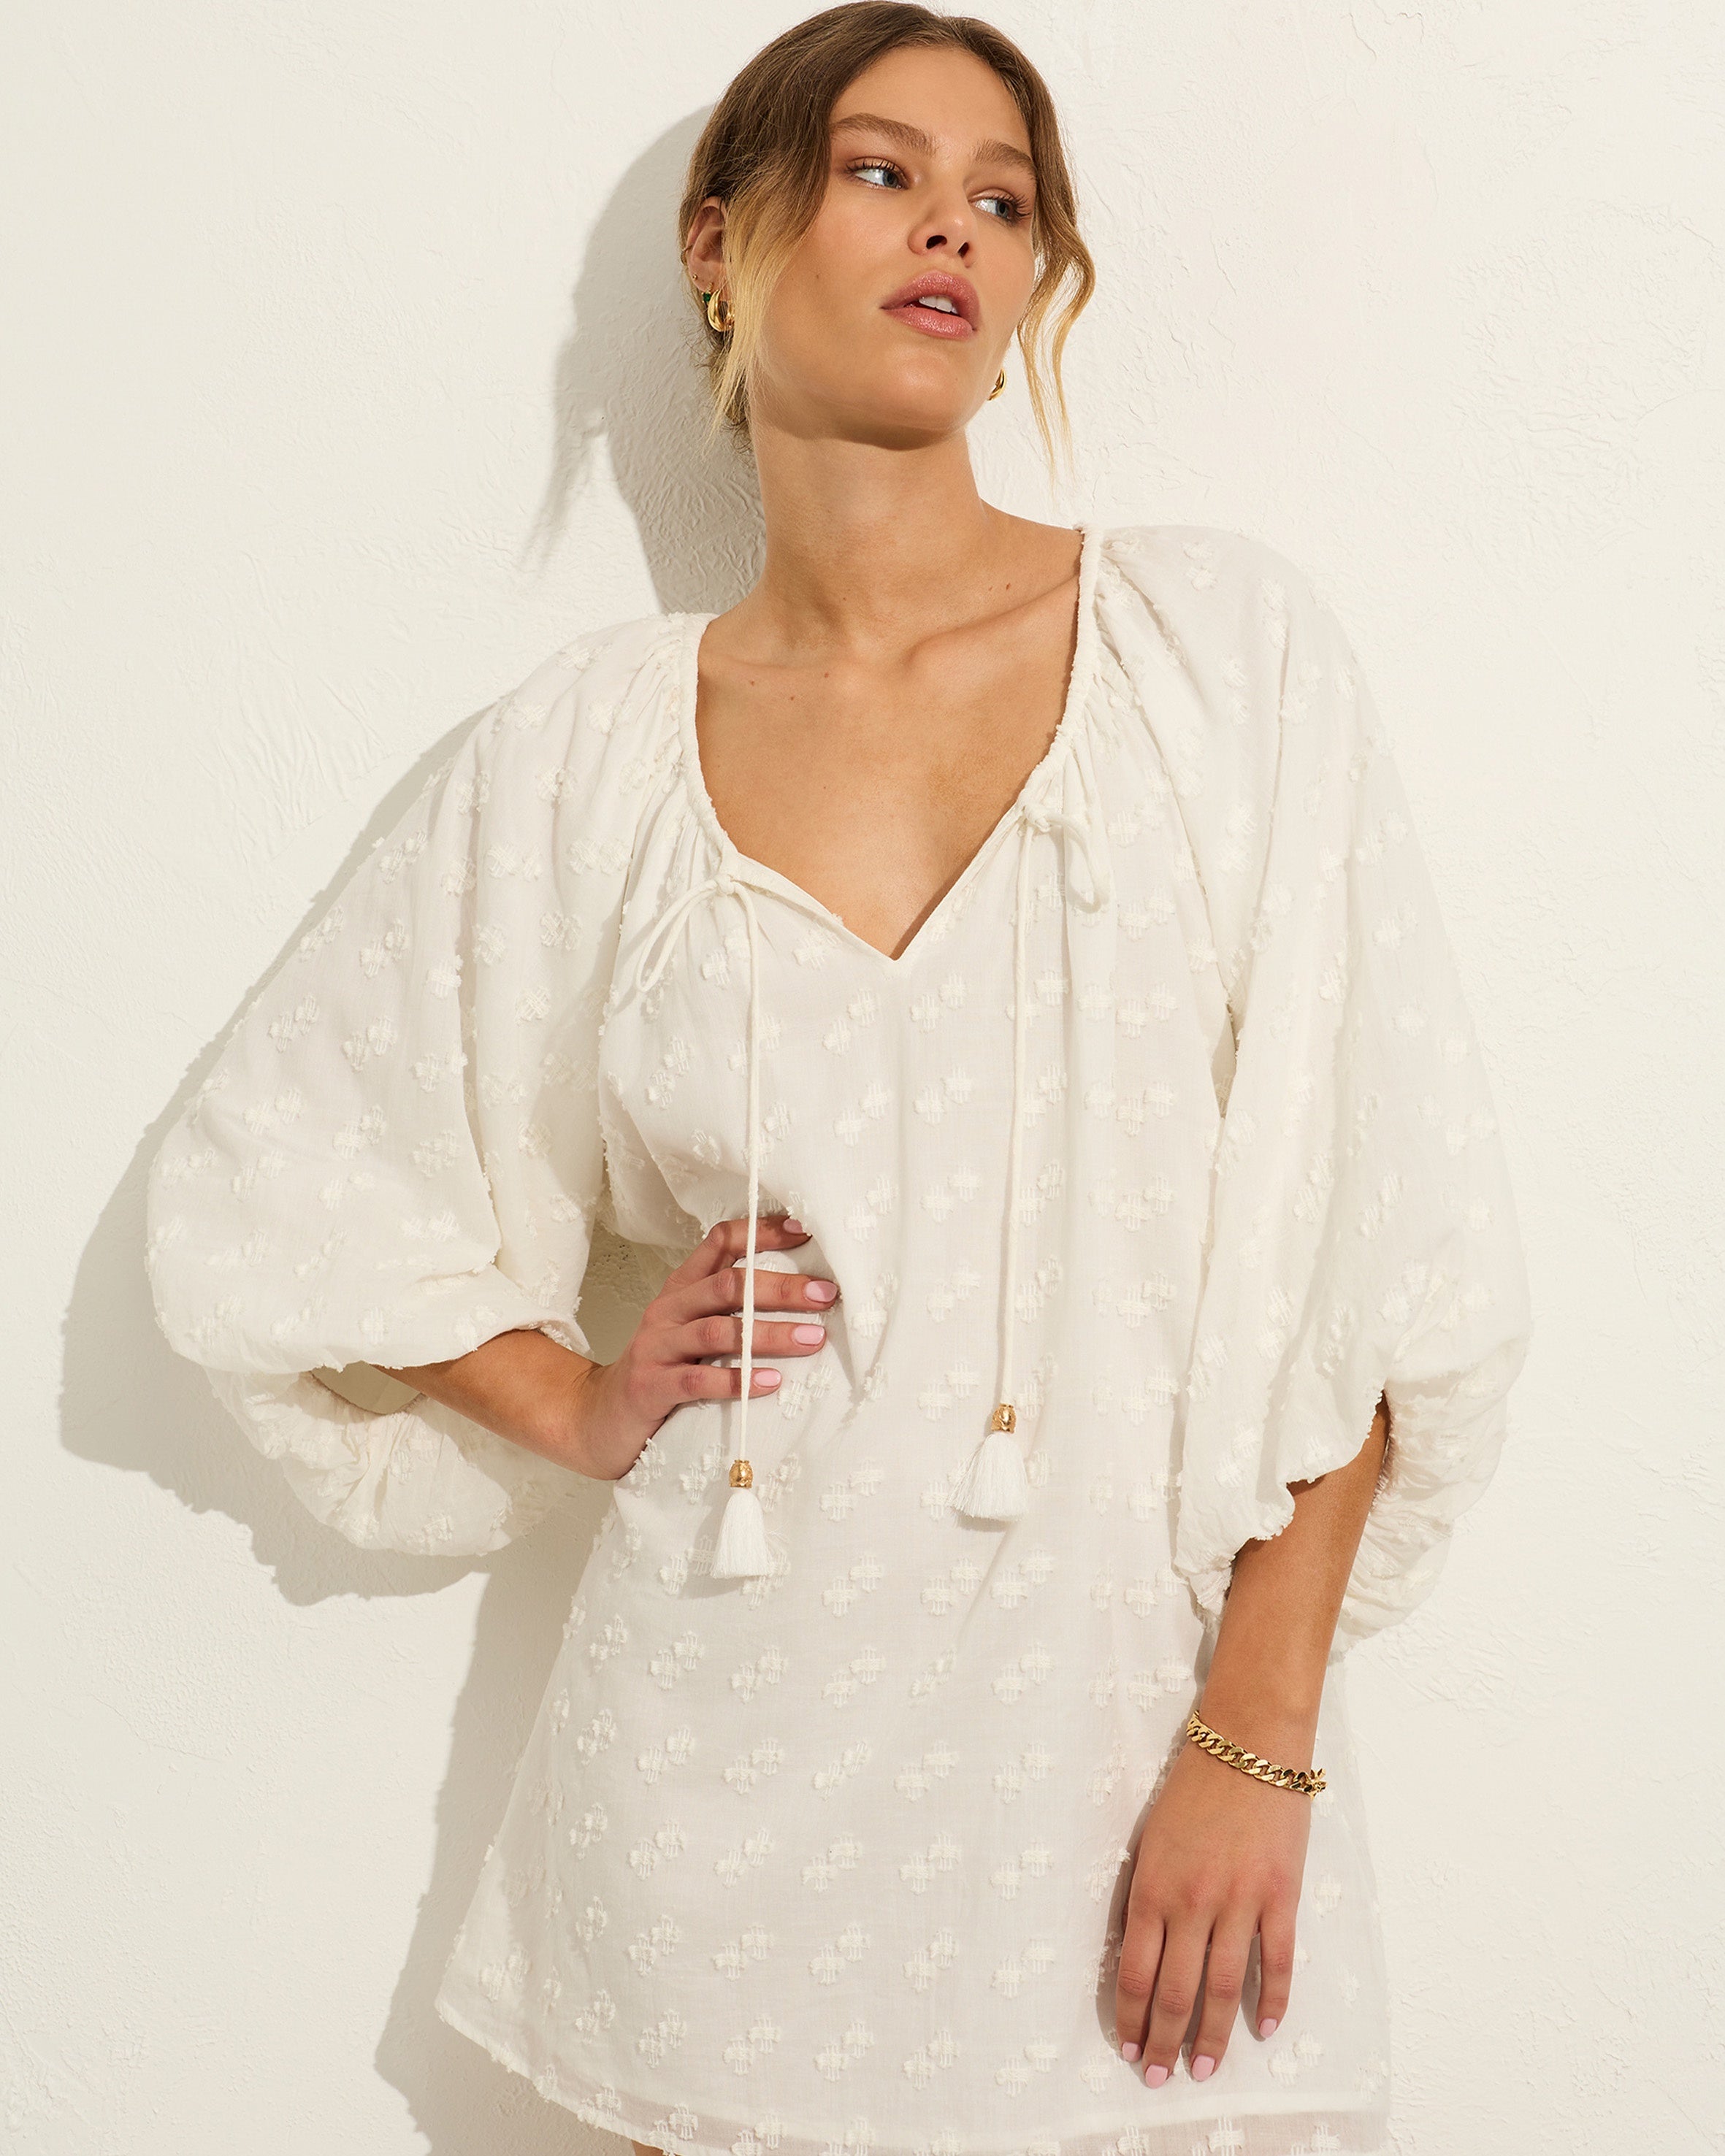 Auguste | Cora Mini Dress - Off White